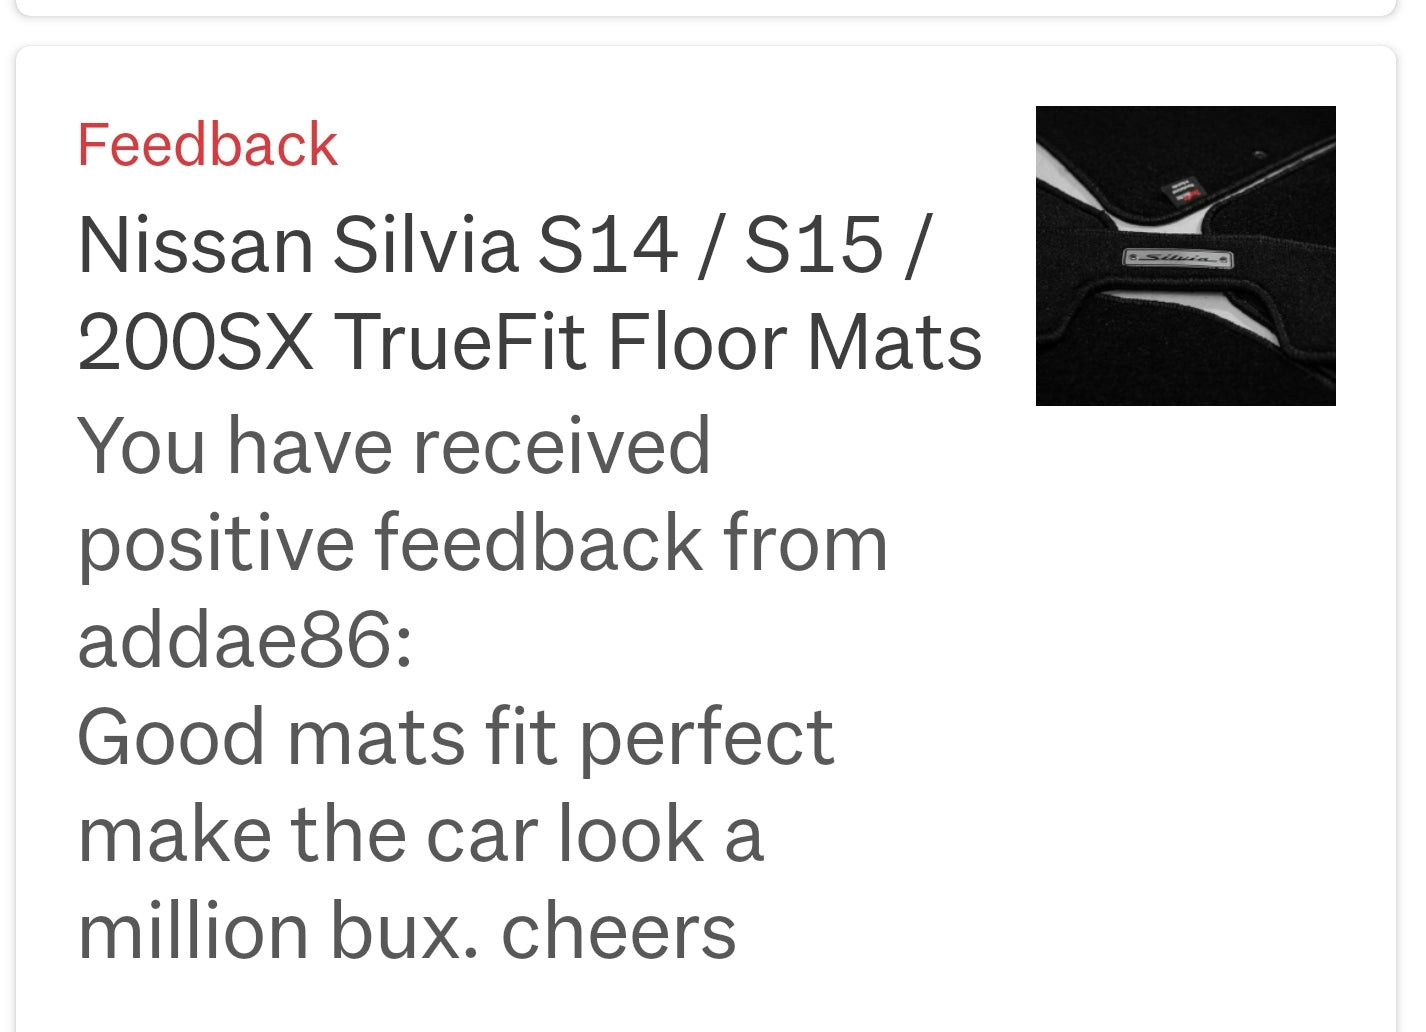 Nissan Silvia S14 / S15 / 200SX Floor Mats.